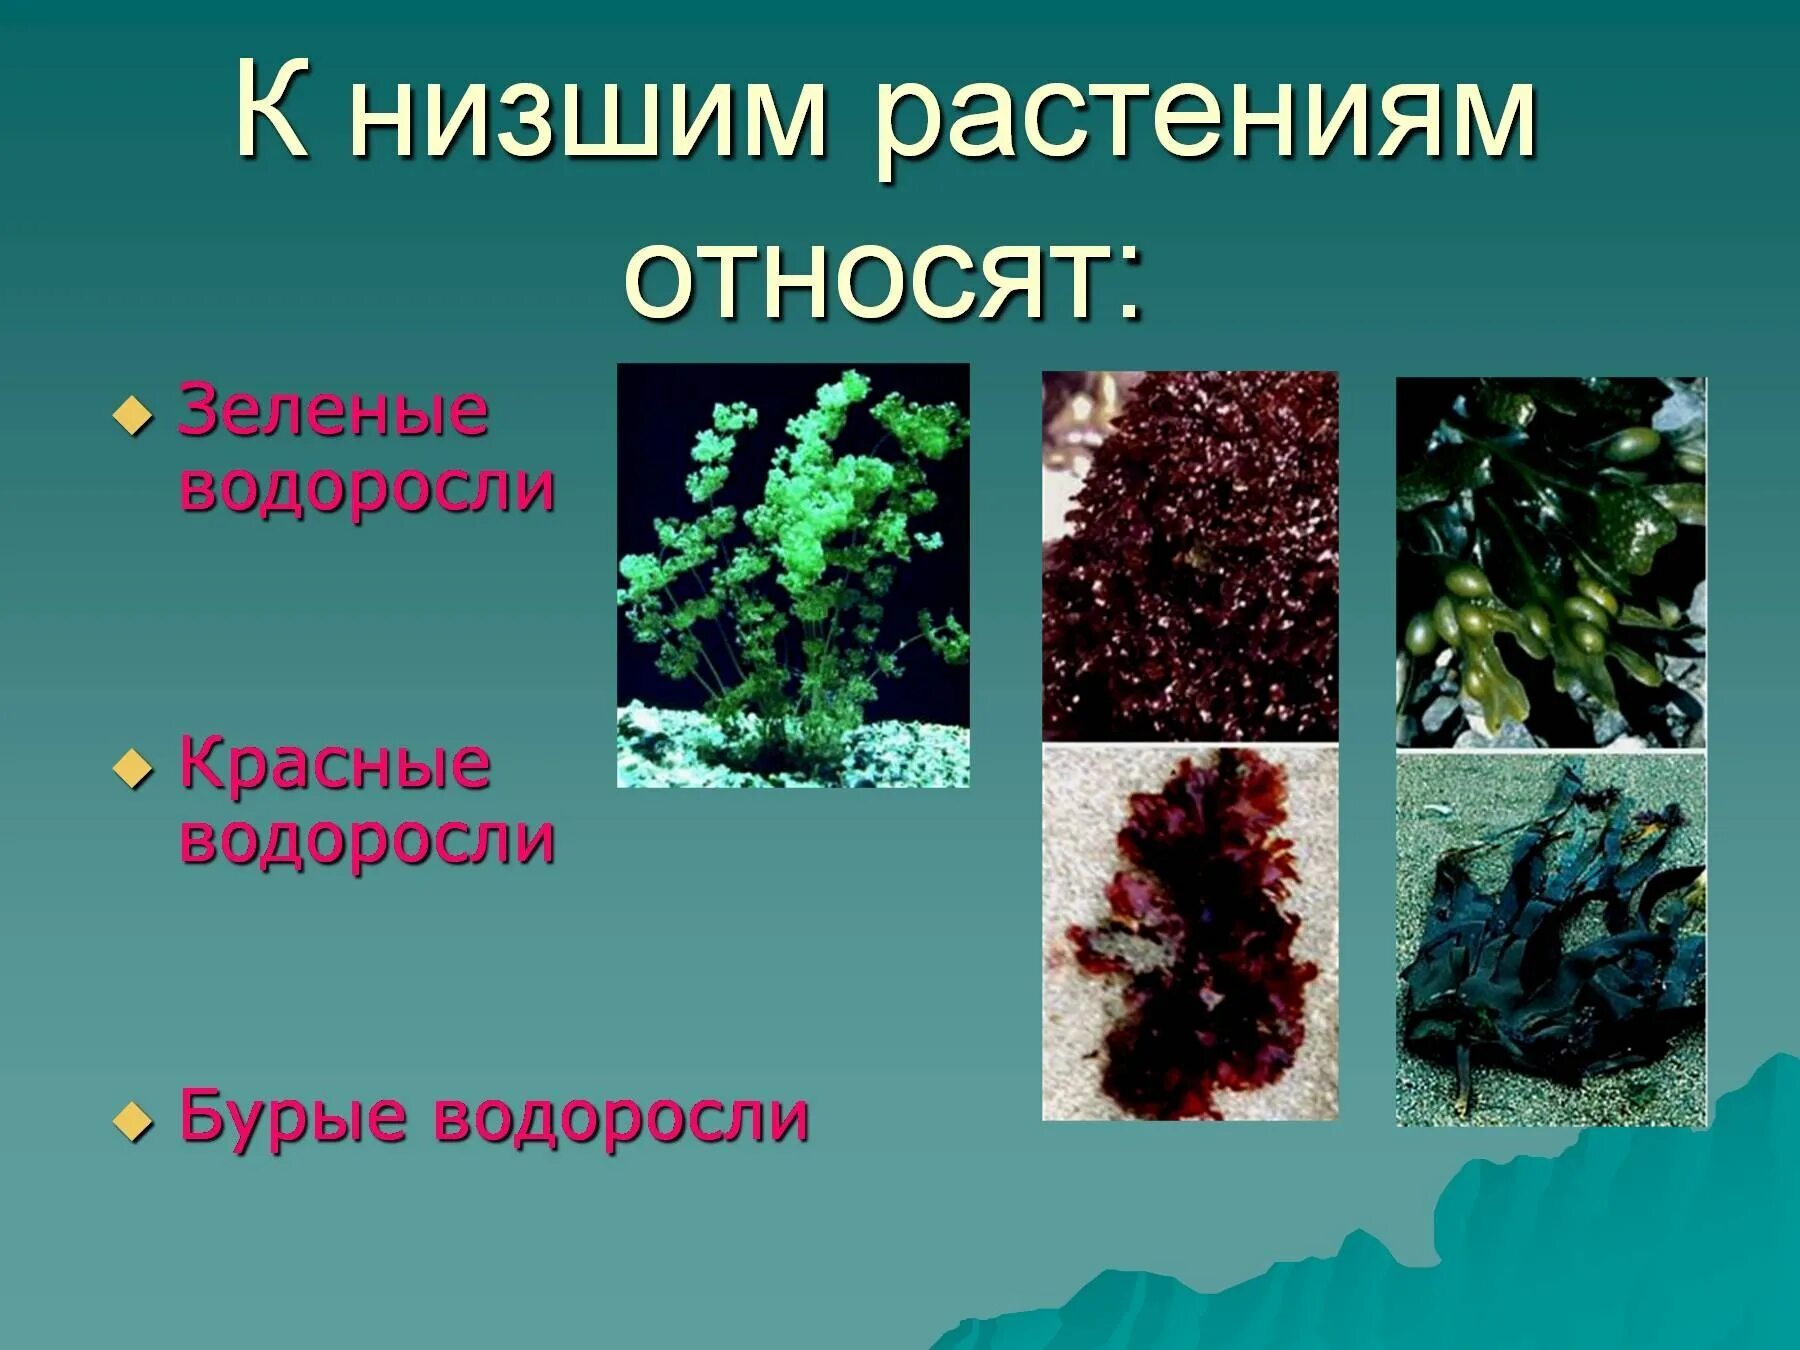 Три примера низших растений. Низшие растения. Растения которые относятся к низшим. Низкие растения. Название низших растений.